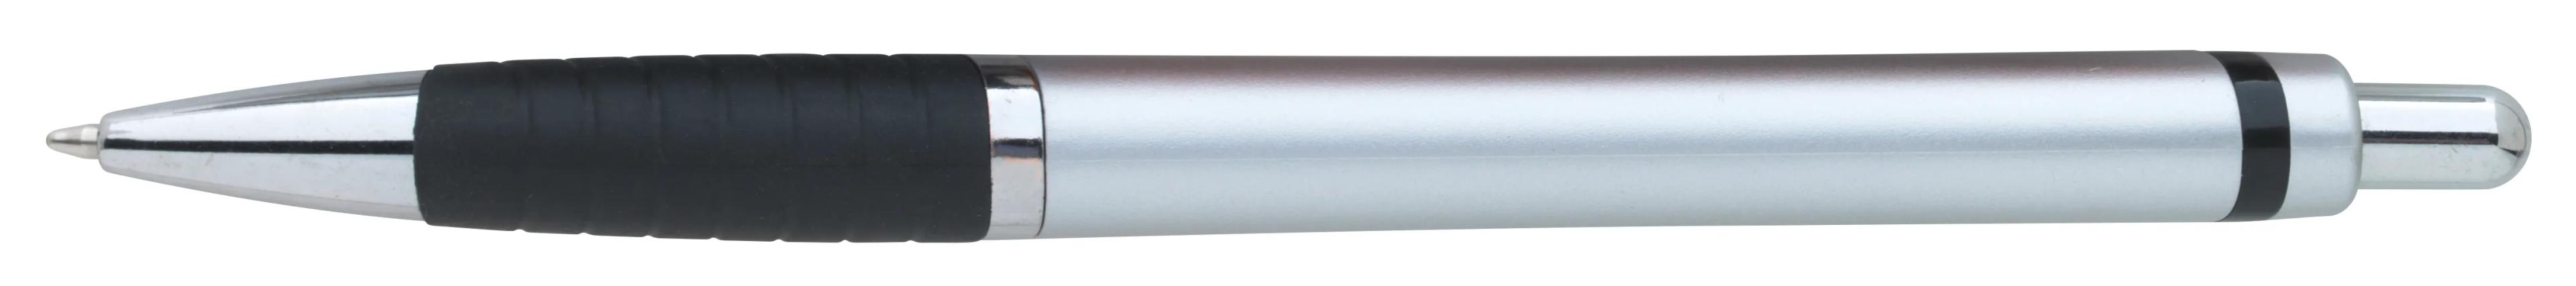 Arrow Metallic Pen 28 of 43